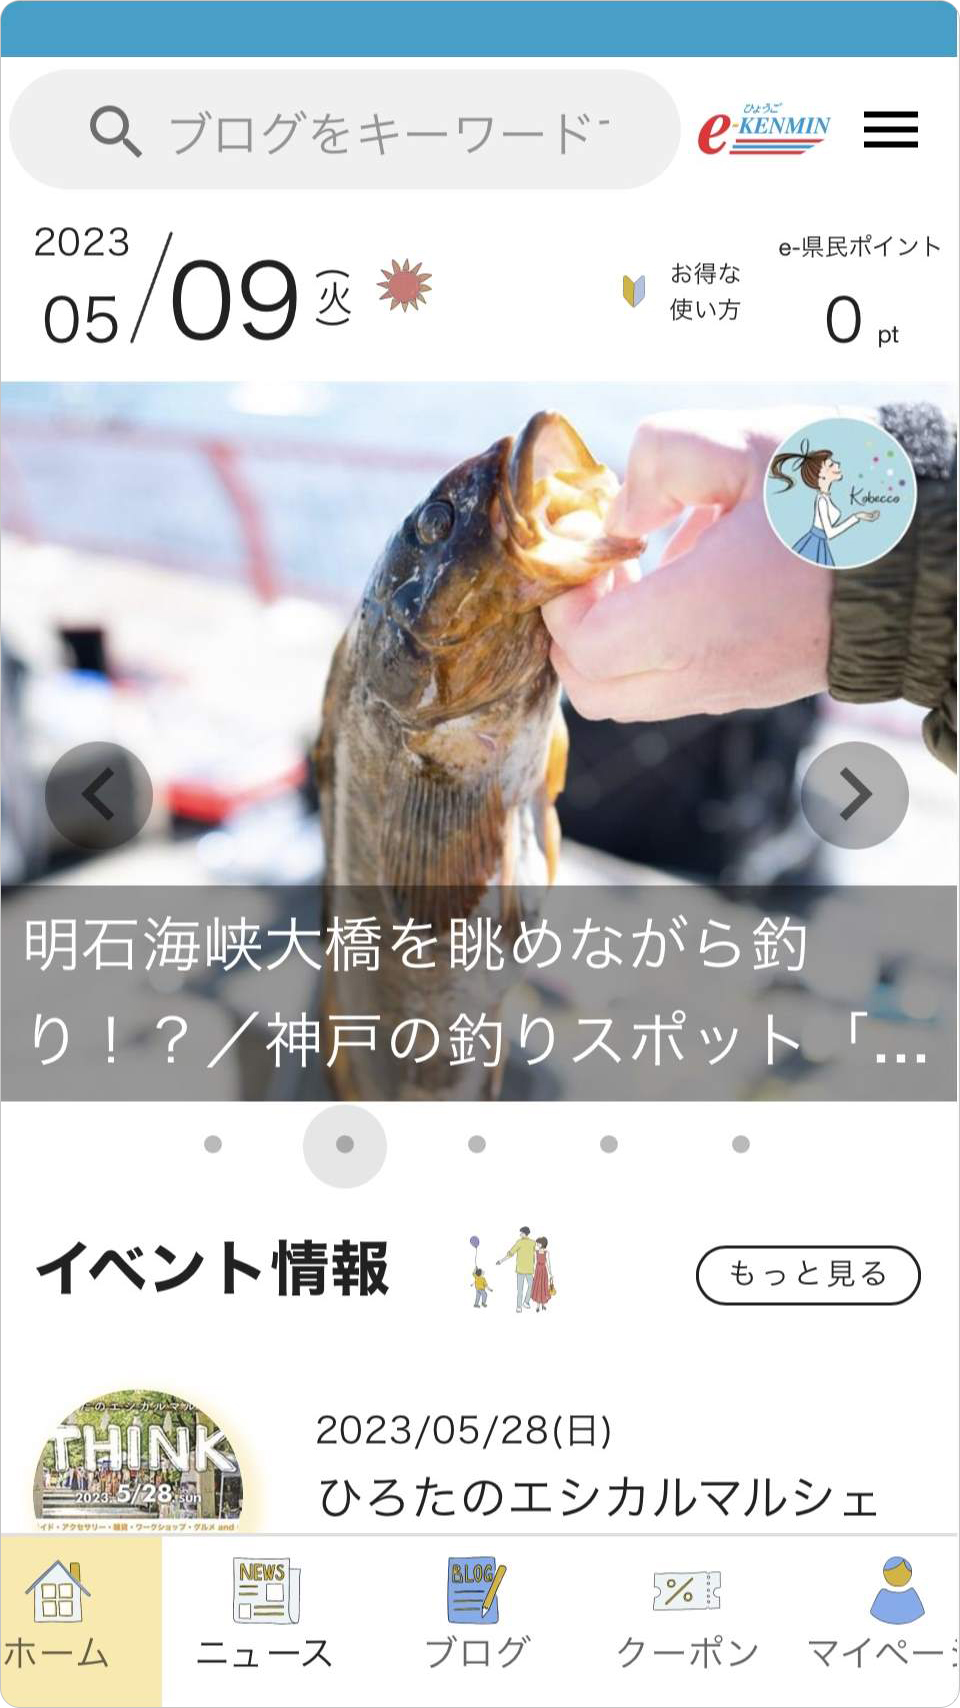 「ひょうごe-県民制度アプリ」の画面